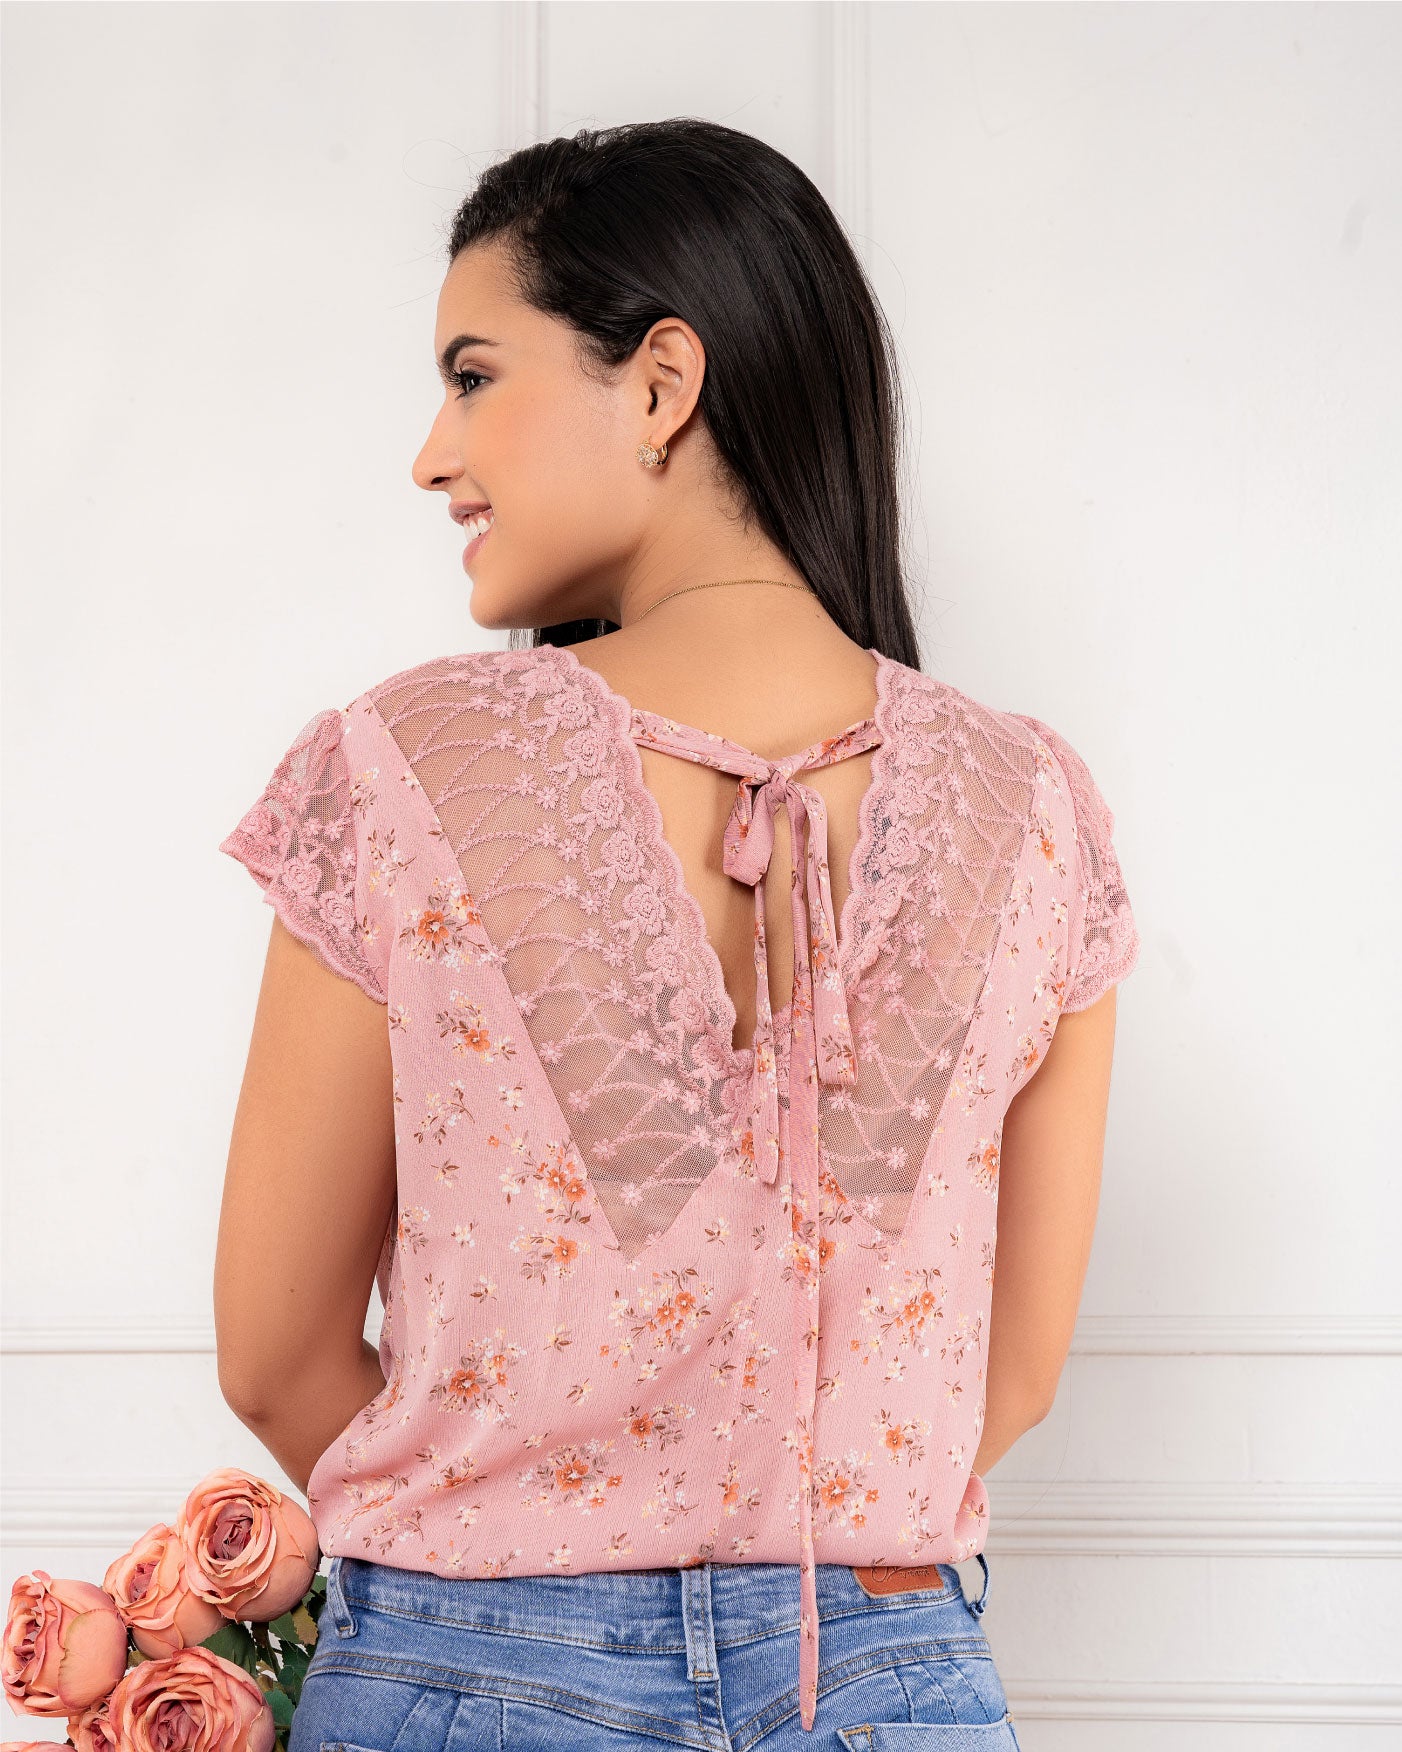 Blusa floral con encaje – MxM Perú